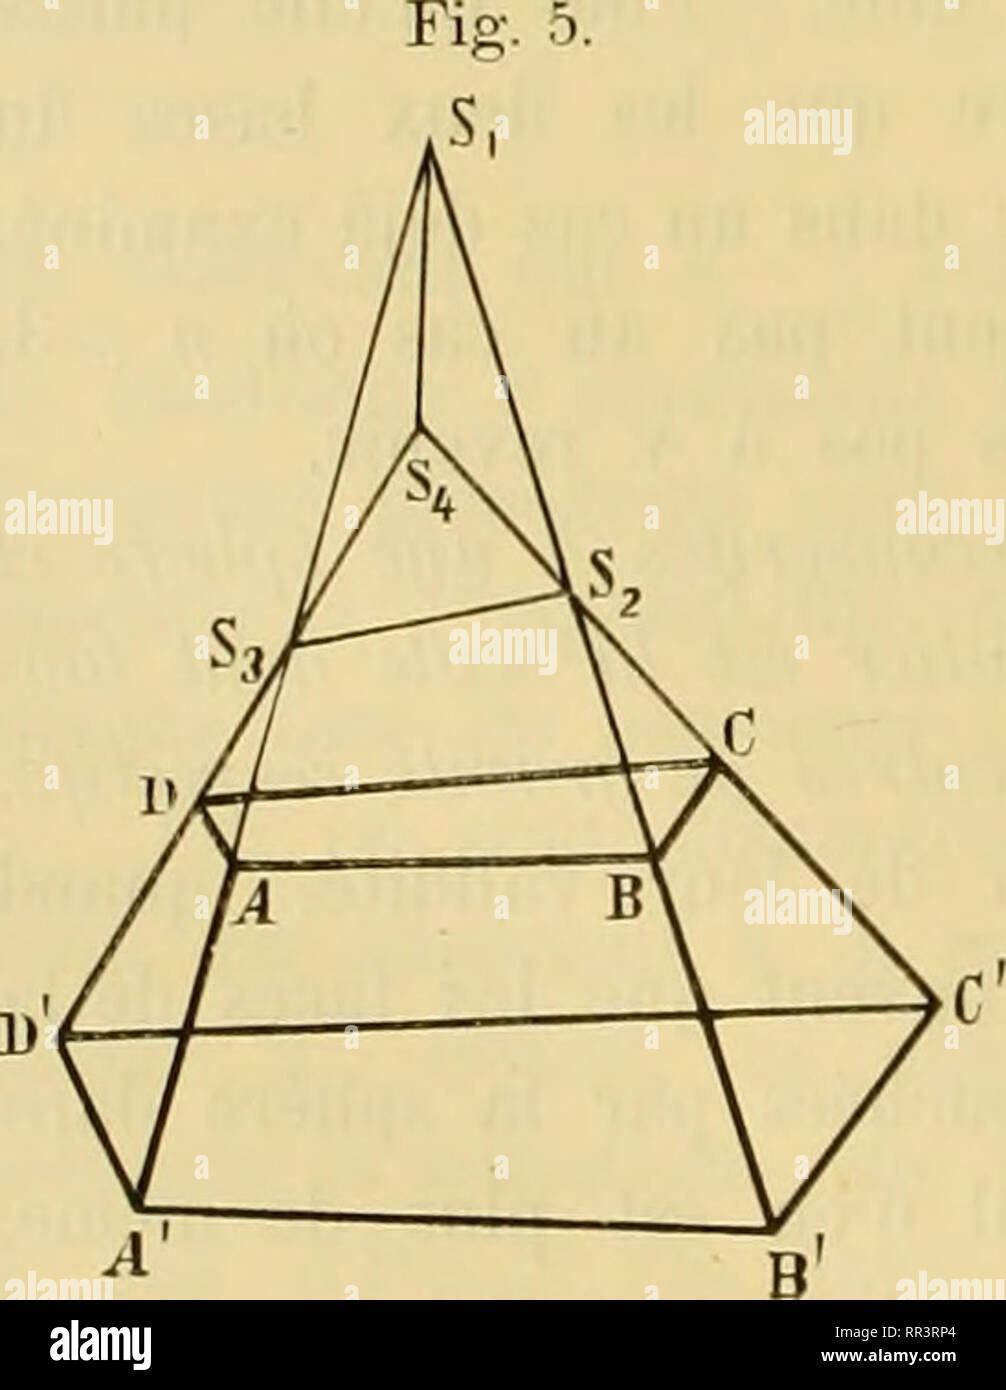 . Acta Societatis Scientiarum Fennicae. La scienza. 28 L. Lindelöp. T. XXIV. térale, à une pyramide quadrangulaire, laquelle peut, aussi bien que le prisme triangulaire régulier, remplir les condizioni dont il s'agit. Hexaèdre dont toutes les facce sont des quadrilatères. 16. En prenant à volonté une paire de facce opposées pour basi, nous envisageons les quatre autres comme facce latérales et leurs piani piani comme latéraux. Sauf dans des cas particuliers, dont il sera questione plus tard, ces quatre piani déterminent en général tétraèdre delle Nazioni Unite. Quant à la disposition de Celui-ci, il faut distingu Foto Stock